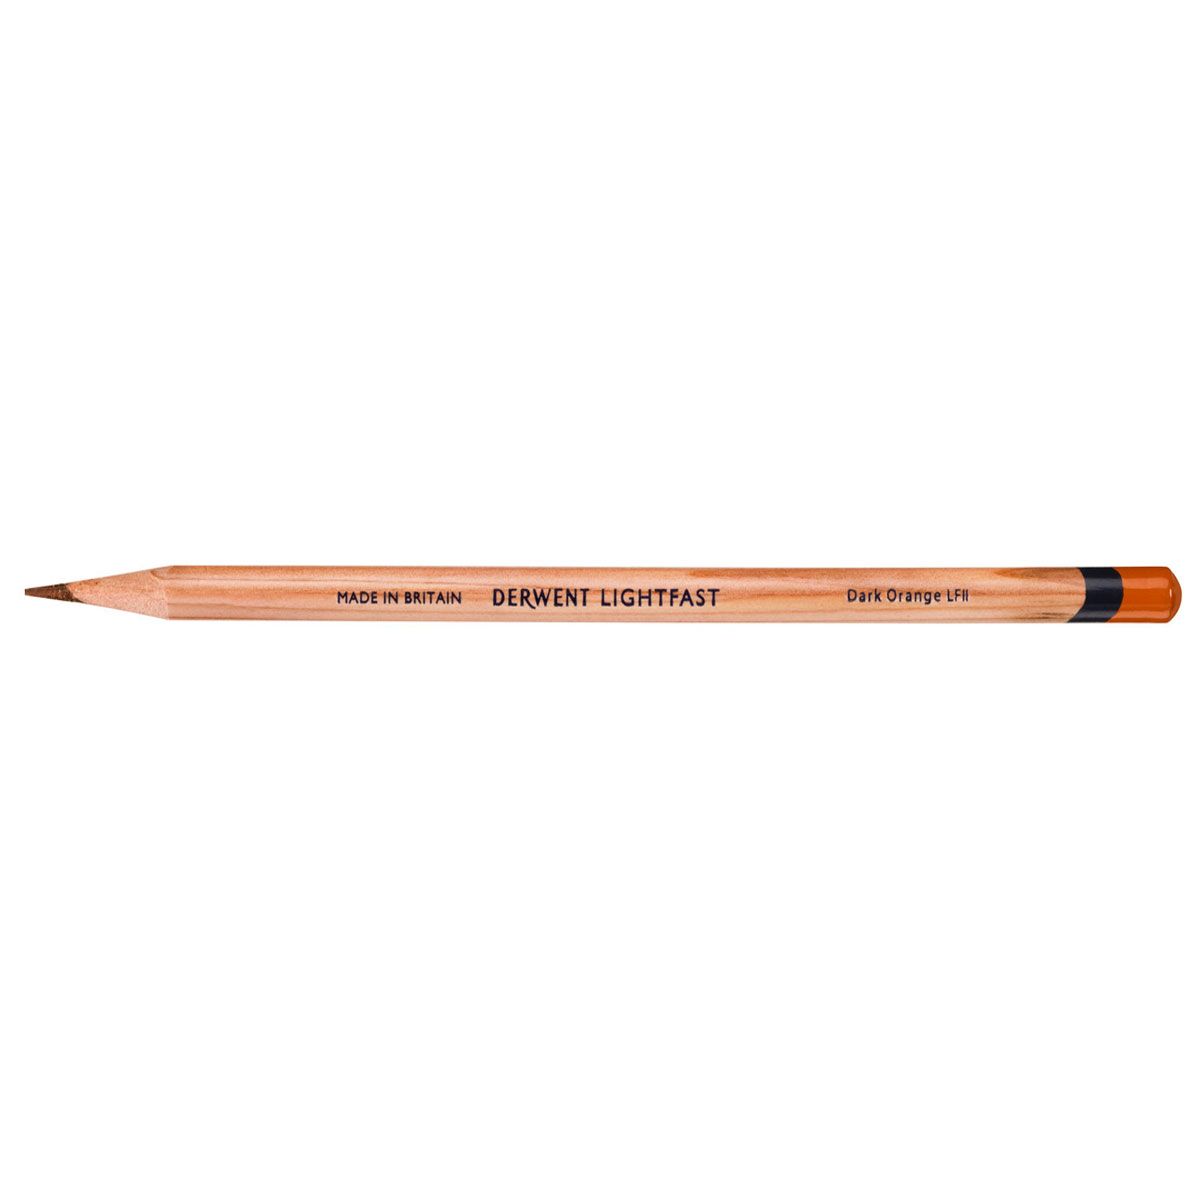 NEW Derwent Lightfast Pencil Colour: Dark Orange